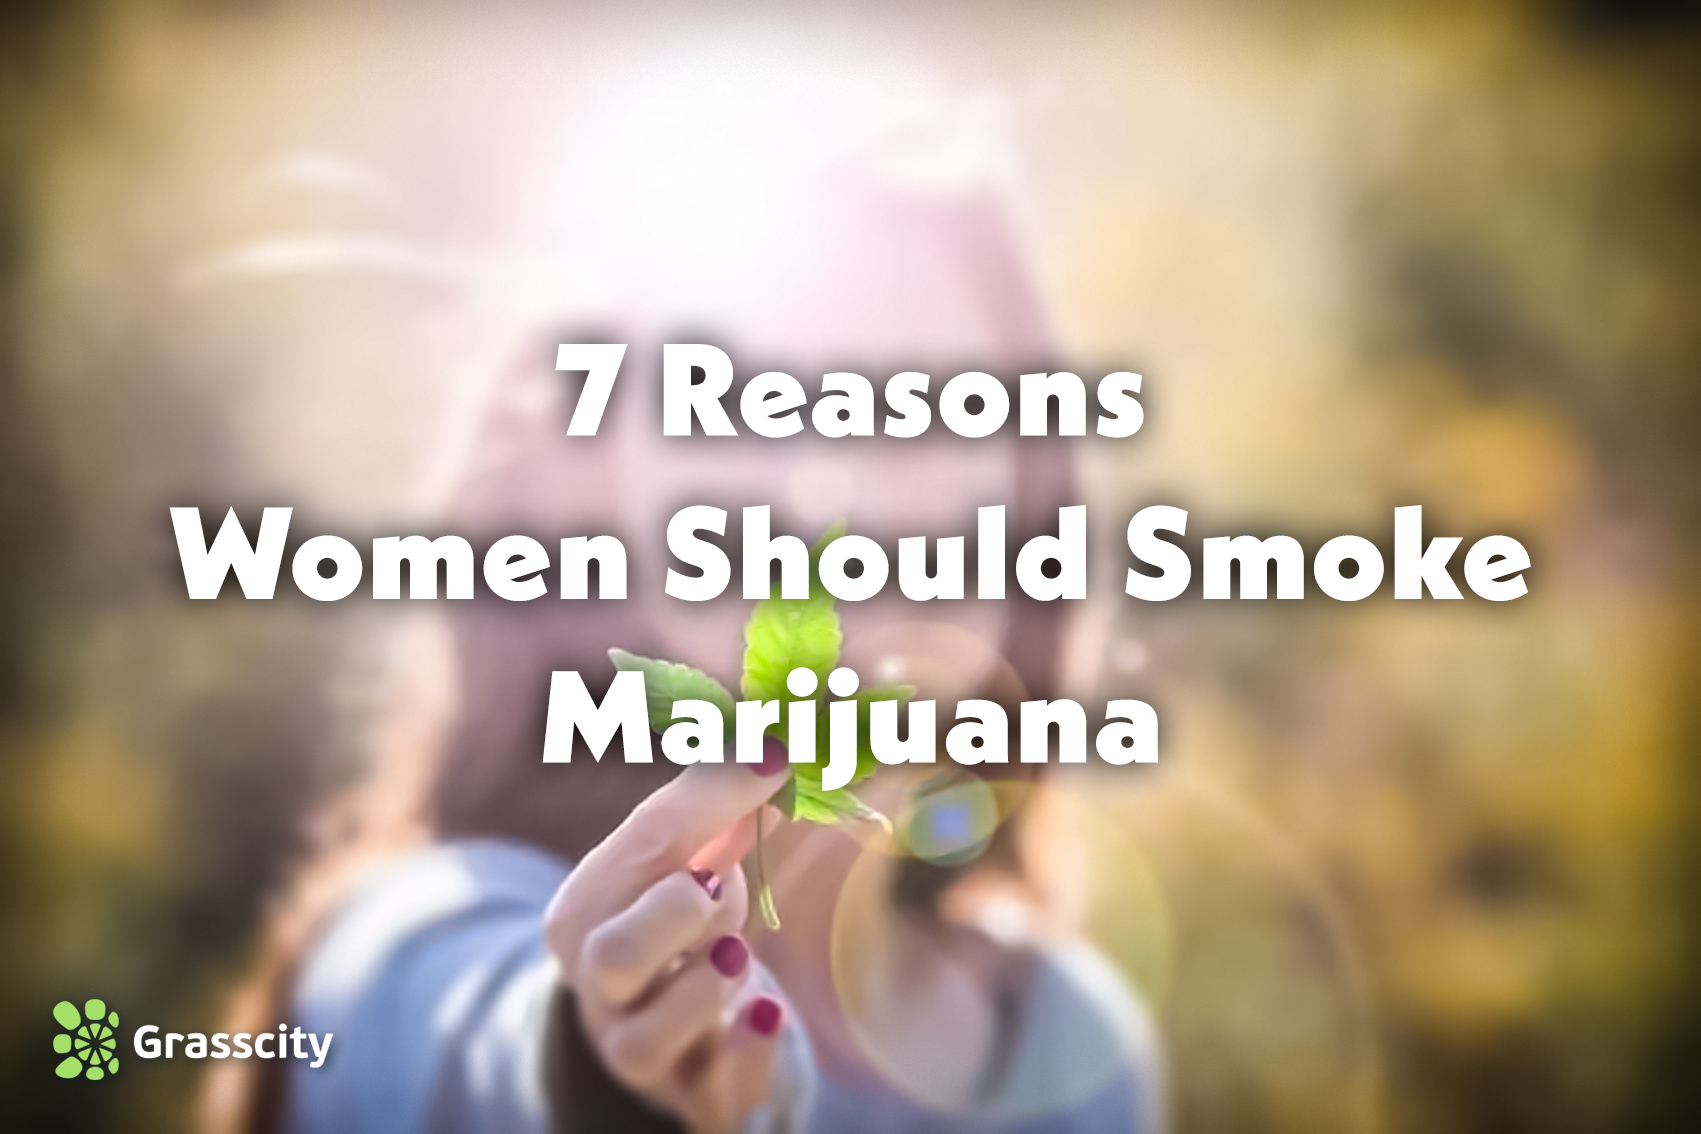 7 Reasons Women Should Smoke Marijuana